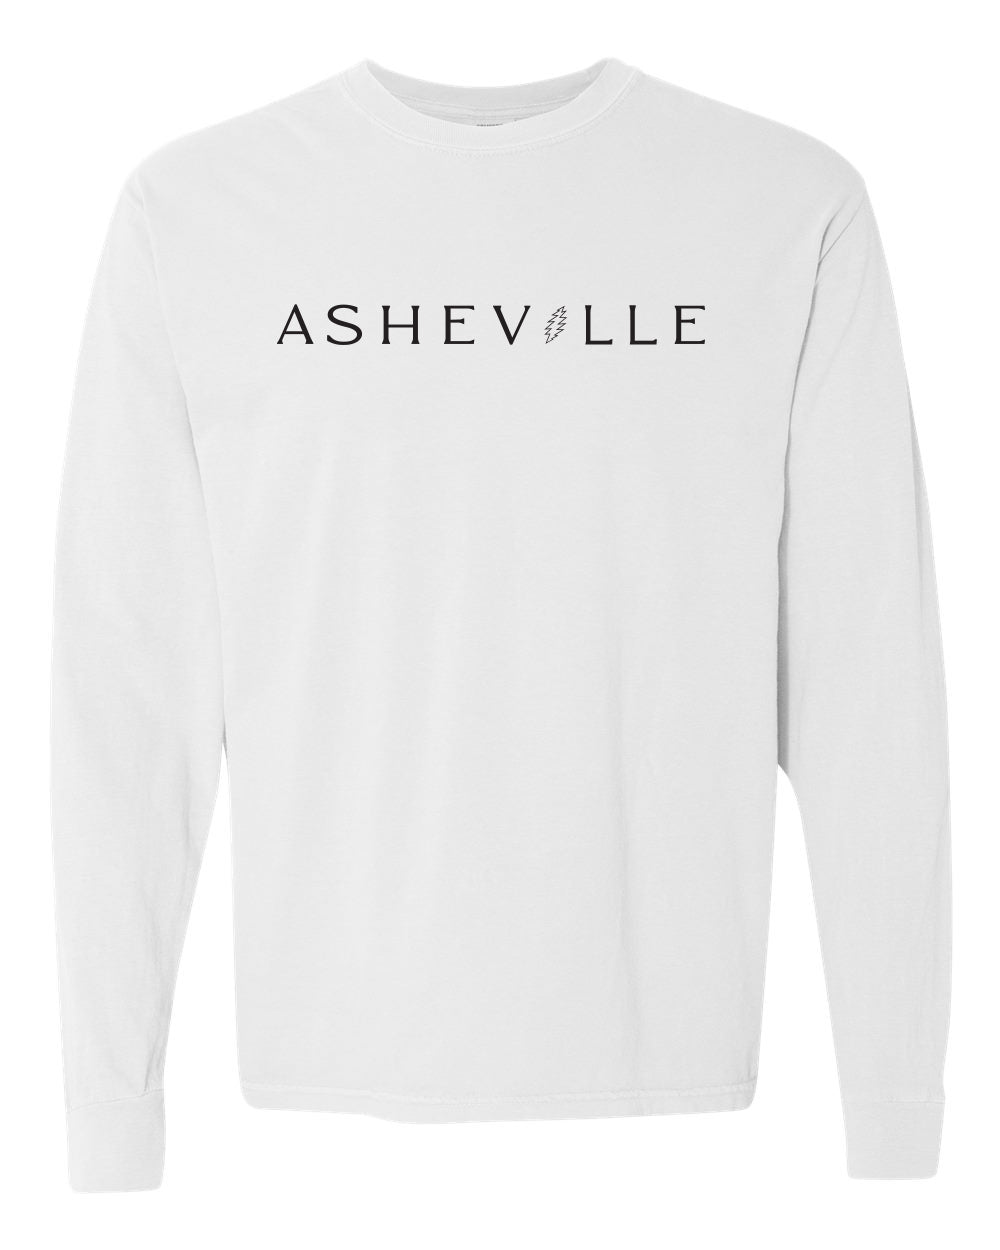 ASHEVILLE Stanley Bear T-Shirt White Long Sleeve - The ASHEVILLE Co. TM